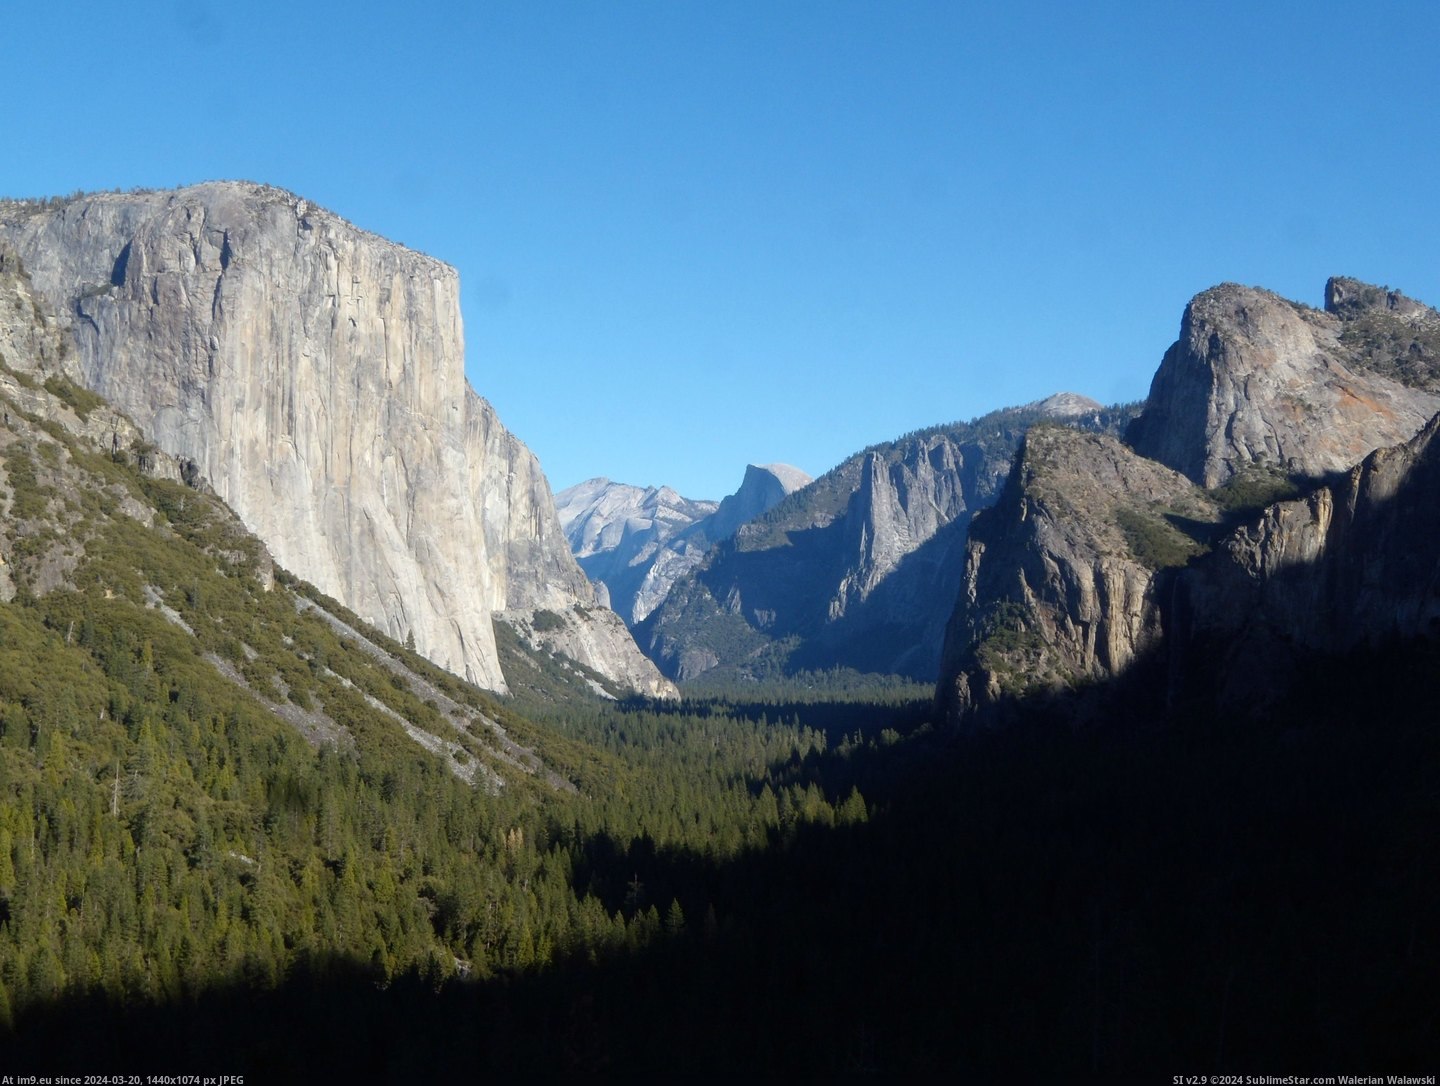 #Valley #Yosemite #Capitan #3264x2448 #Dome [Earthporn] Yosemite Valley, El Capitan & Half Dome [3264x2448] Pic. (Obraz z album My r/EARTHPORN favs))